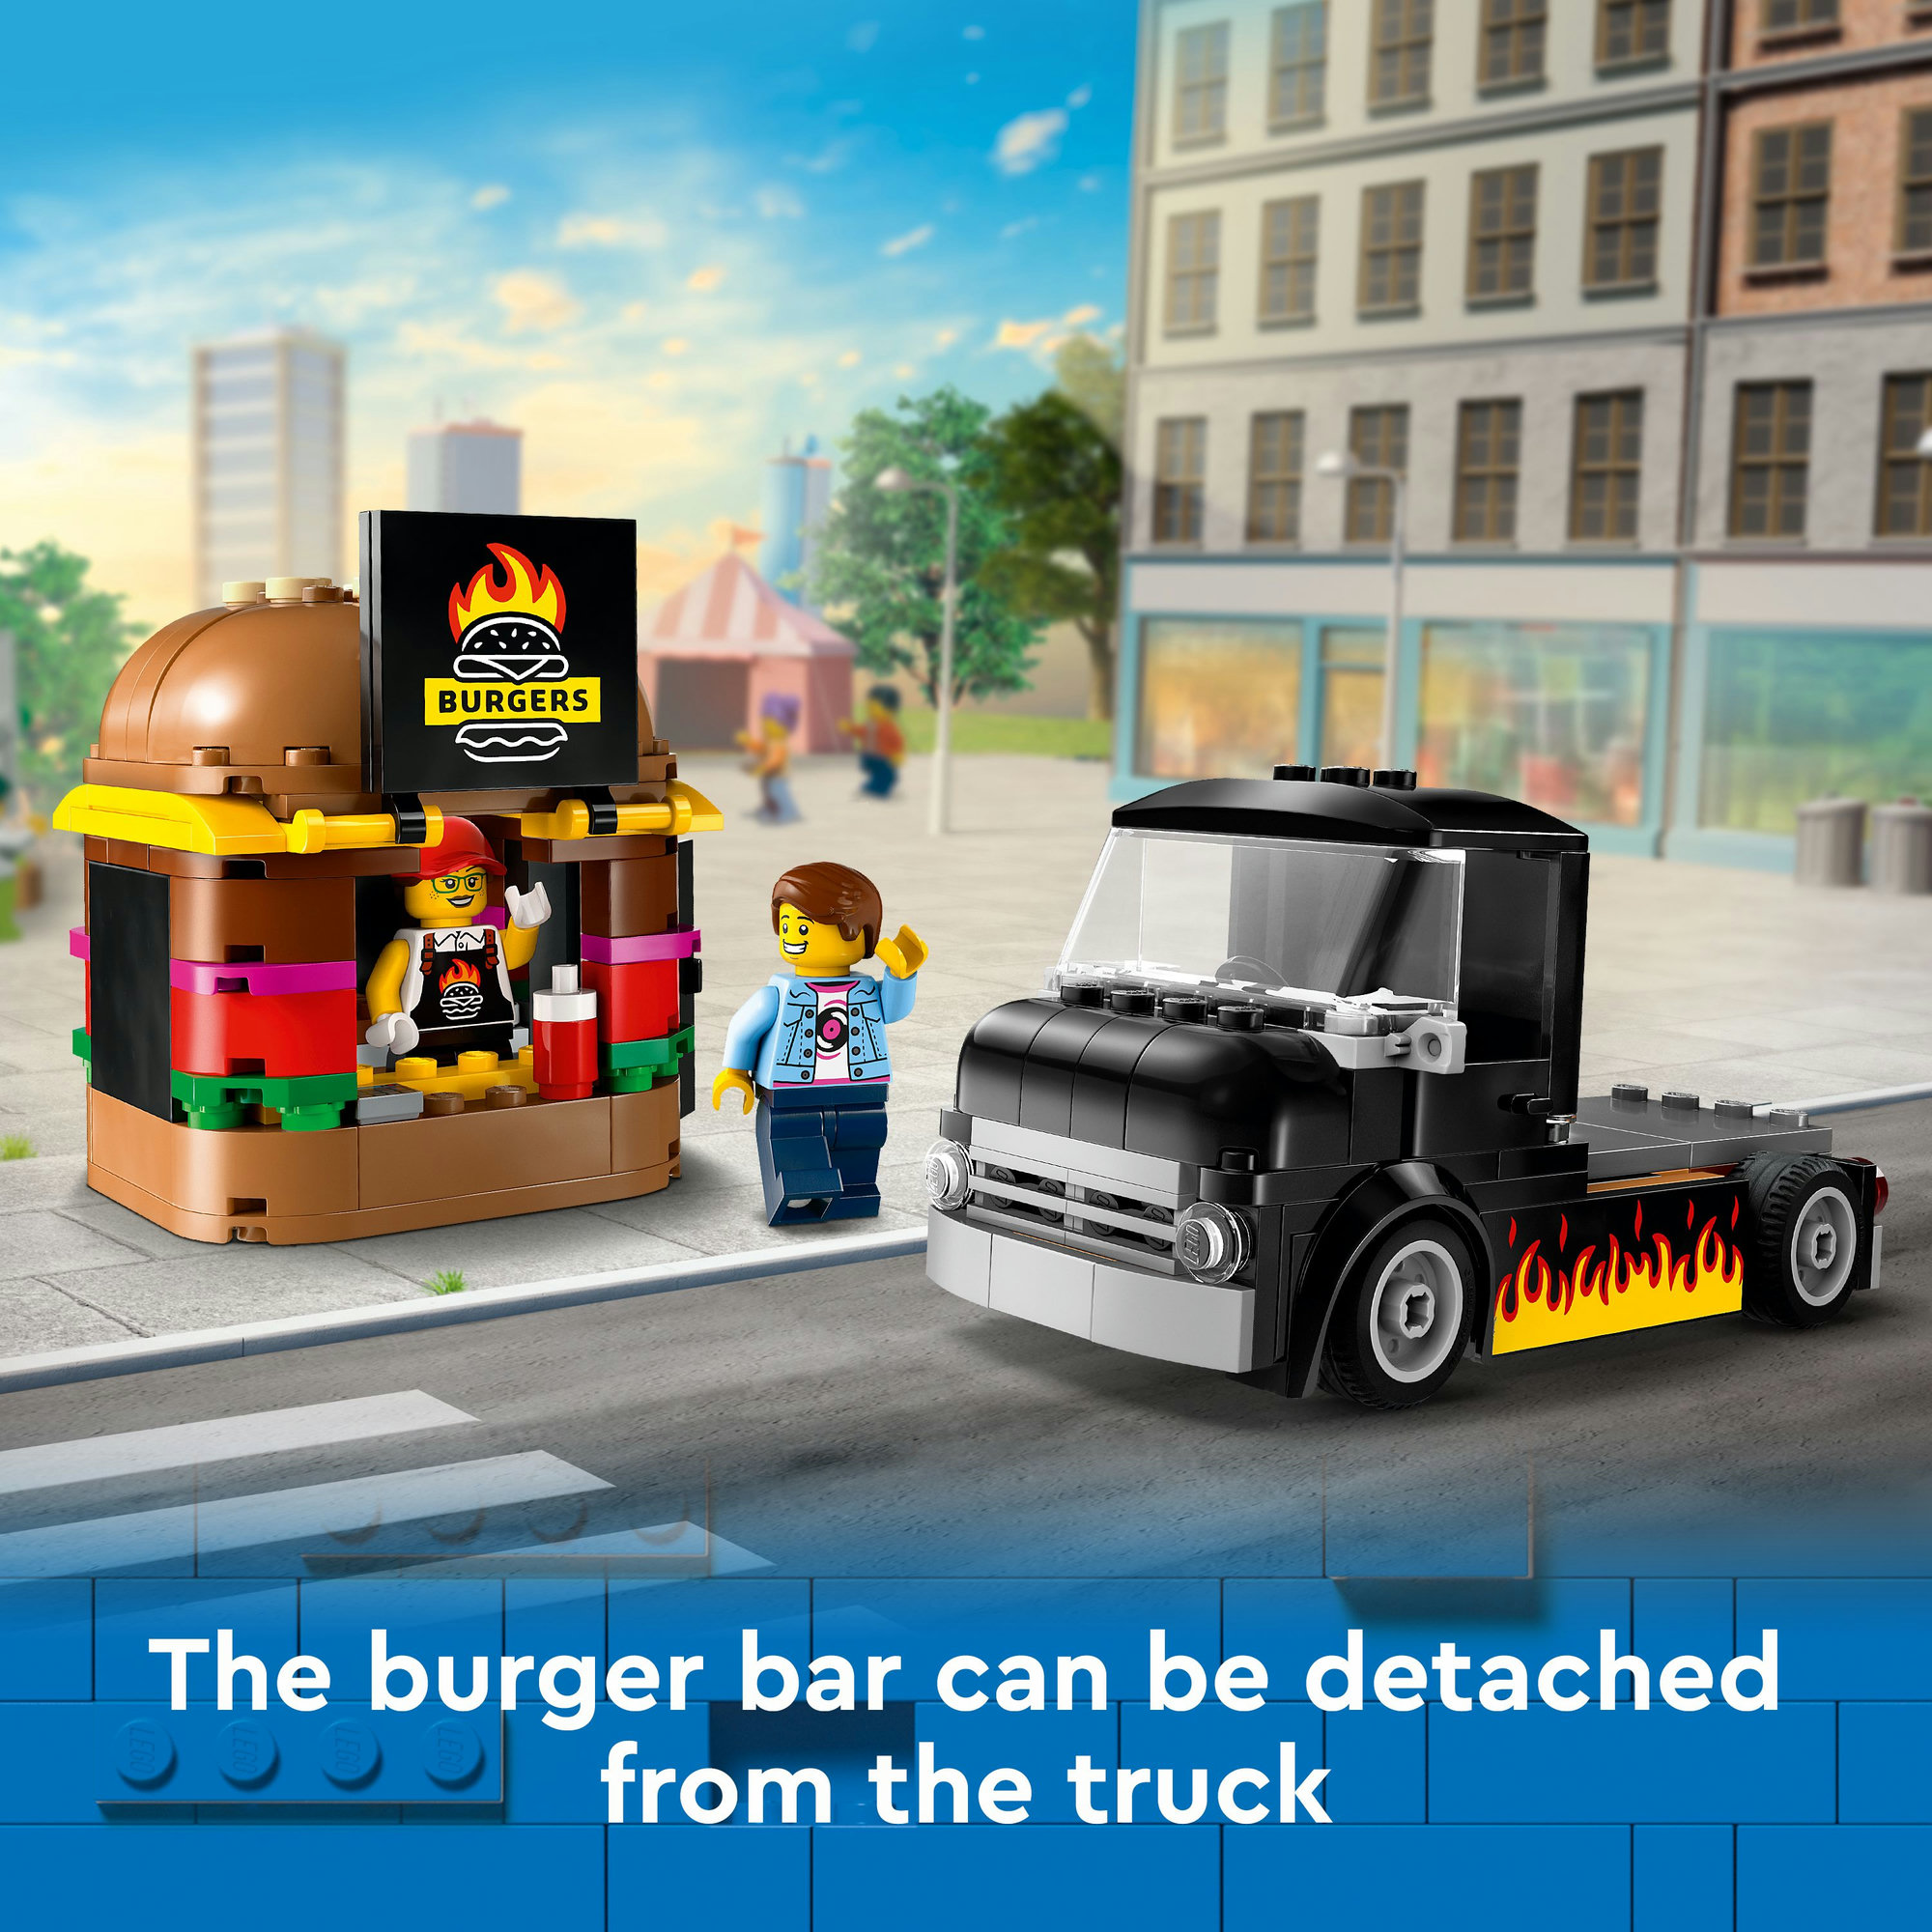 LEGO CITY 60404 Đồ chơi lắp ráp Xe tải Burger lưu động (194 chi tiết)